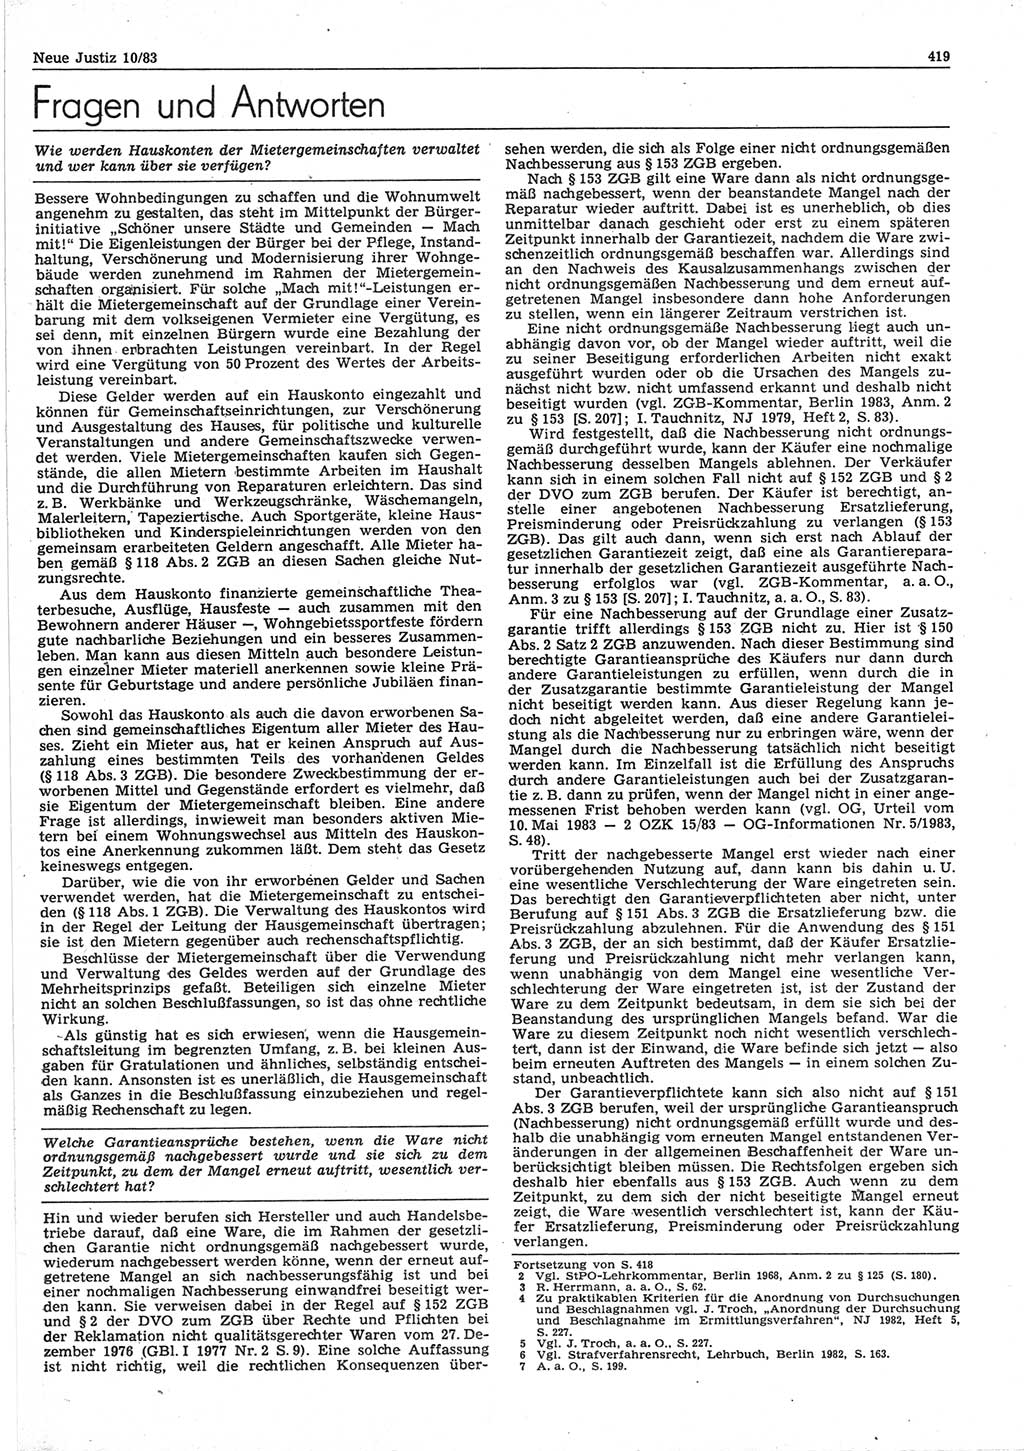 Neue Justiz (NJ), Zeitschrift für sozialistisches Recht und Gesetzlichkeit [Deutsche Demokratische Republik (DDR)], 37. Jahrgang 1983, Seite 419 (NJ DDR 1983, S. 419)